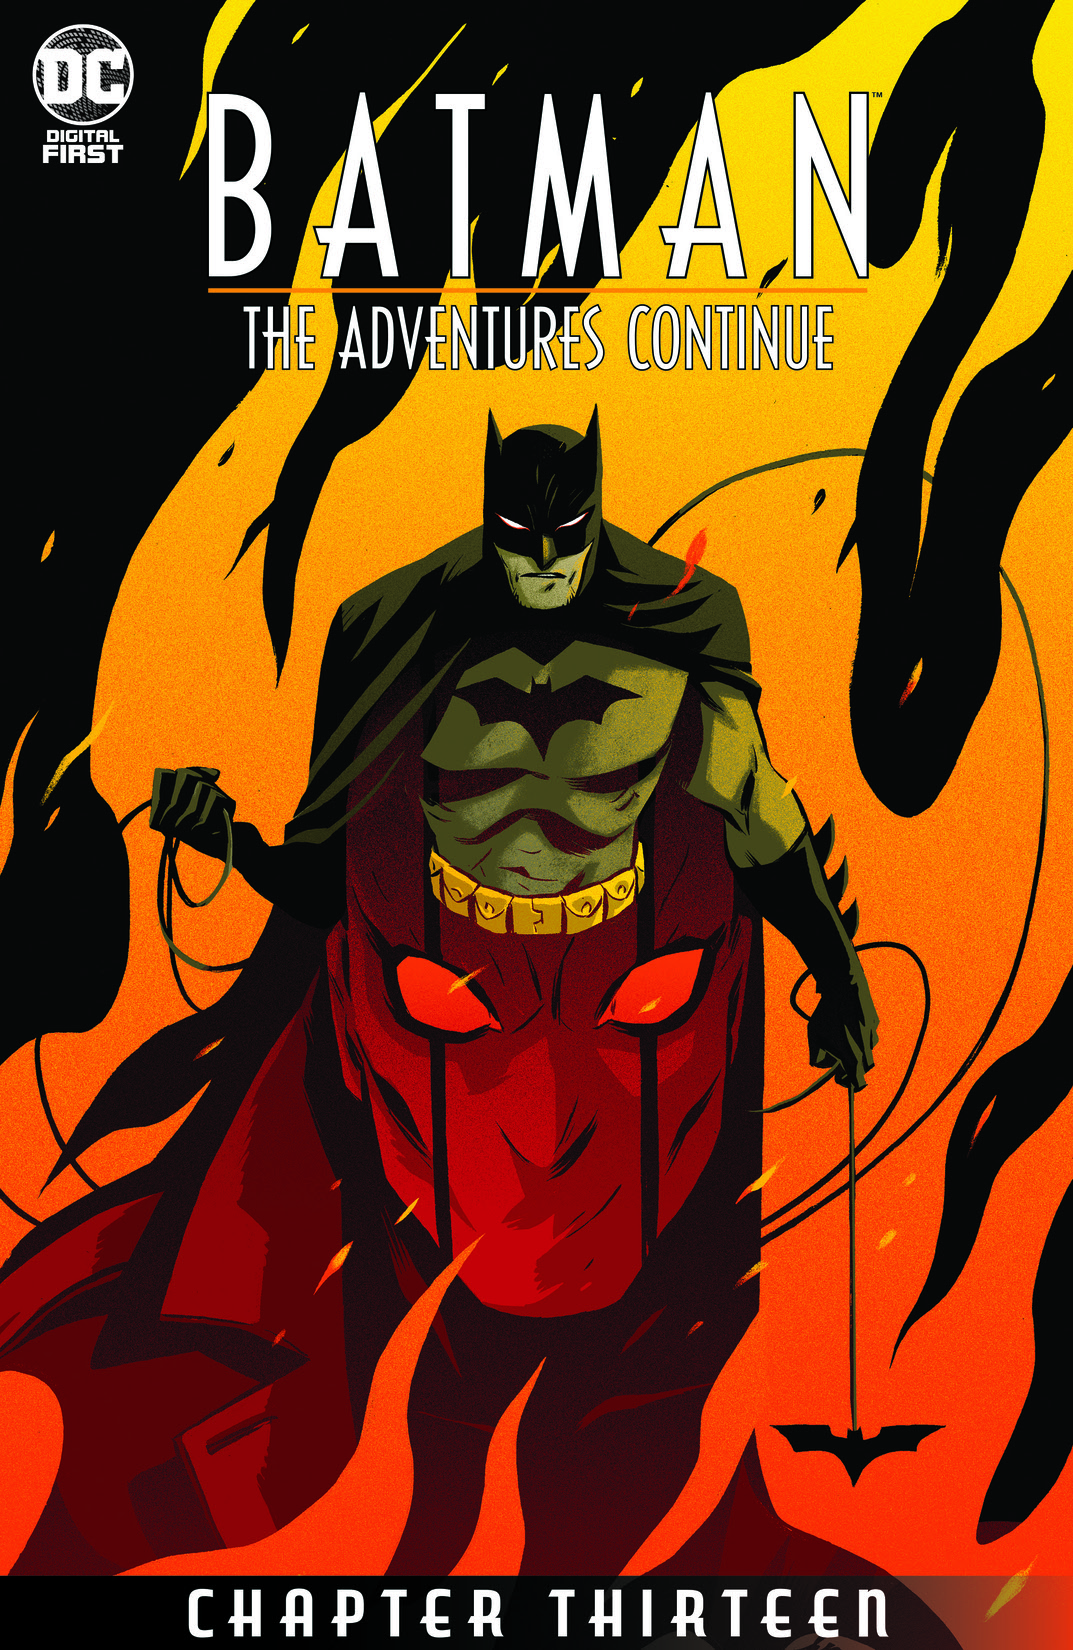 Batman: The Adventures Continue #13 preview images